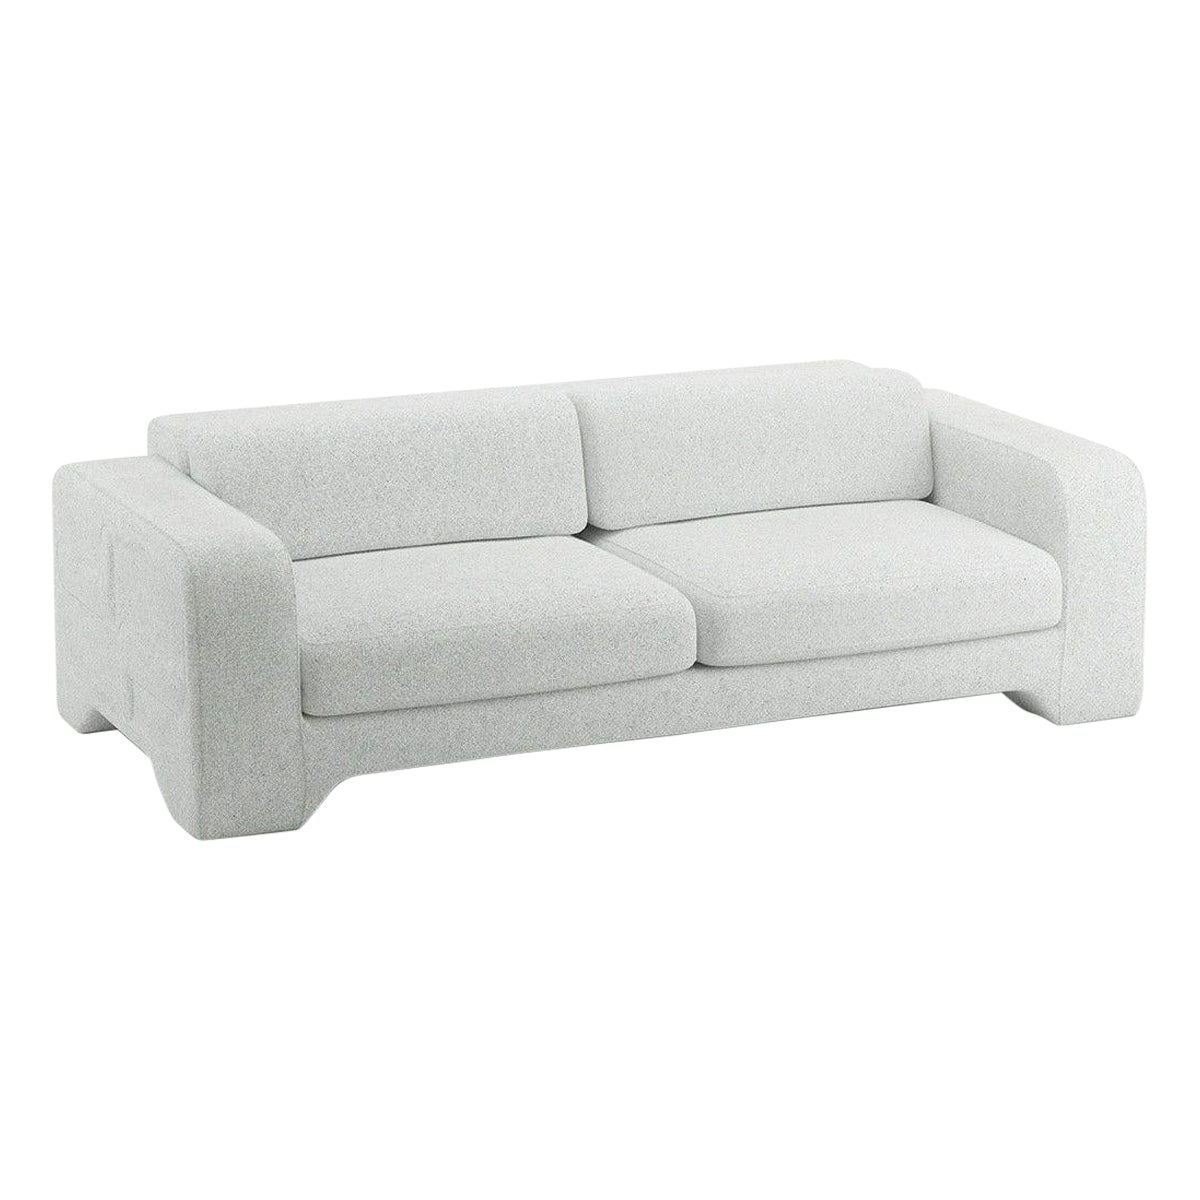 Popus Editions Giovanna 4 Seater Sofa in Cloud Zanzi Linen Fabric